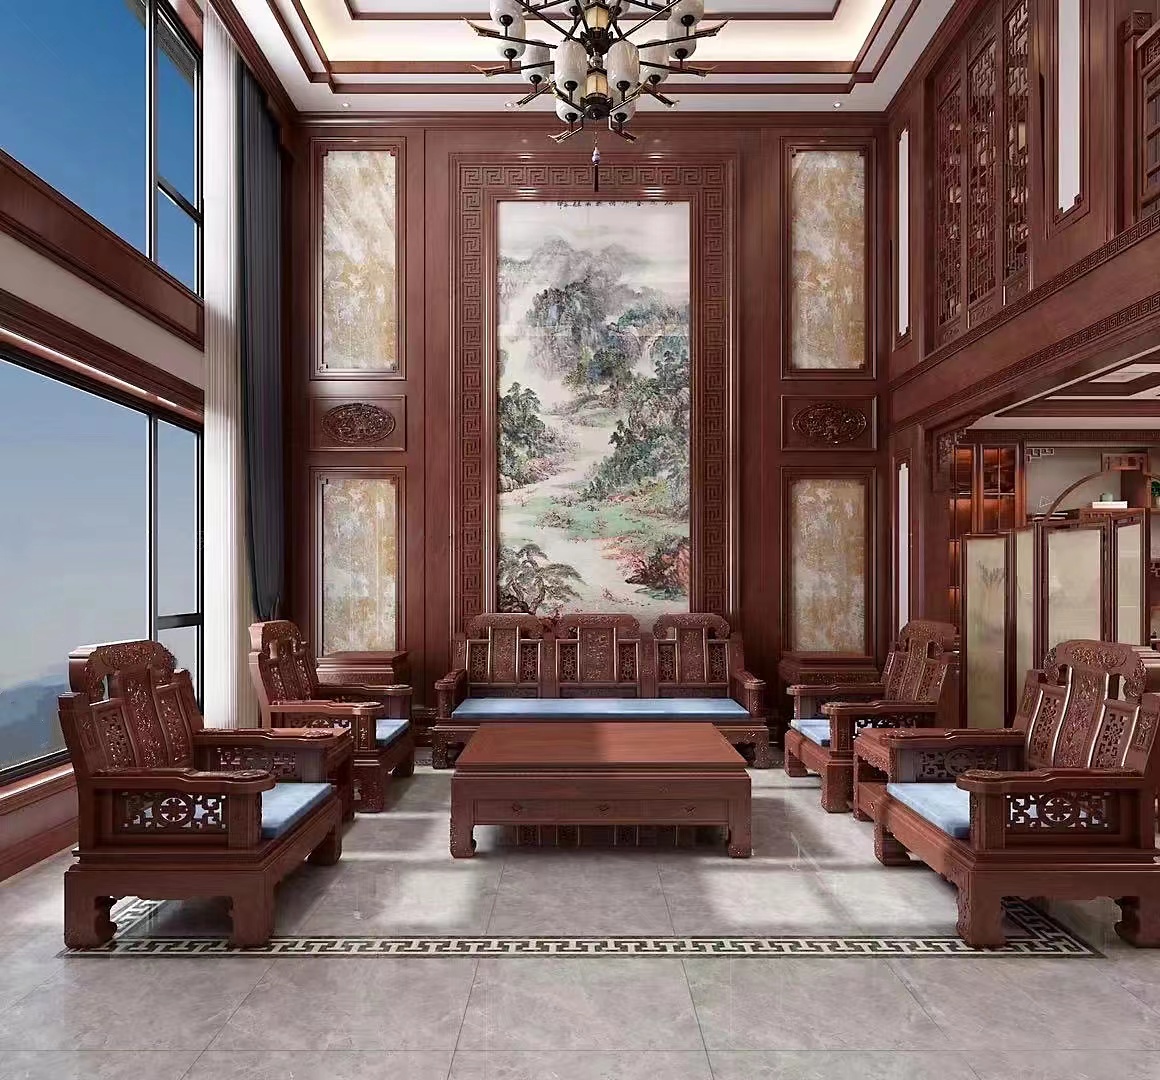 新中式客厅气派红木家具装修效果图- 中国风